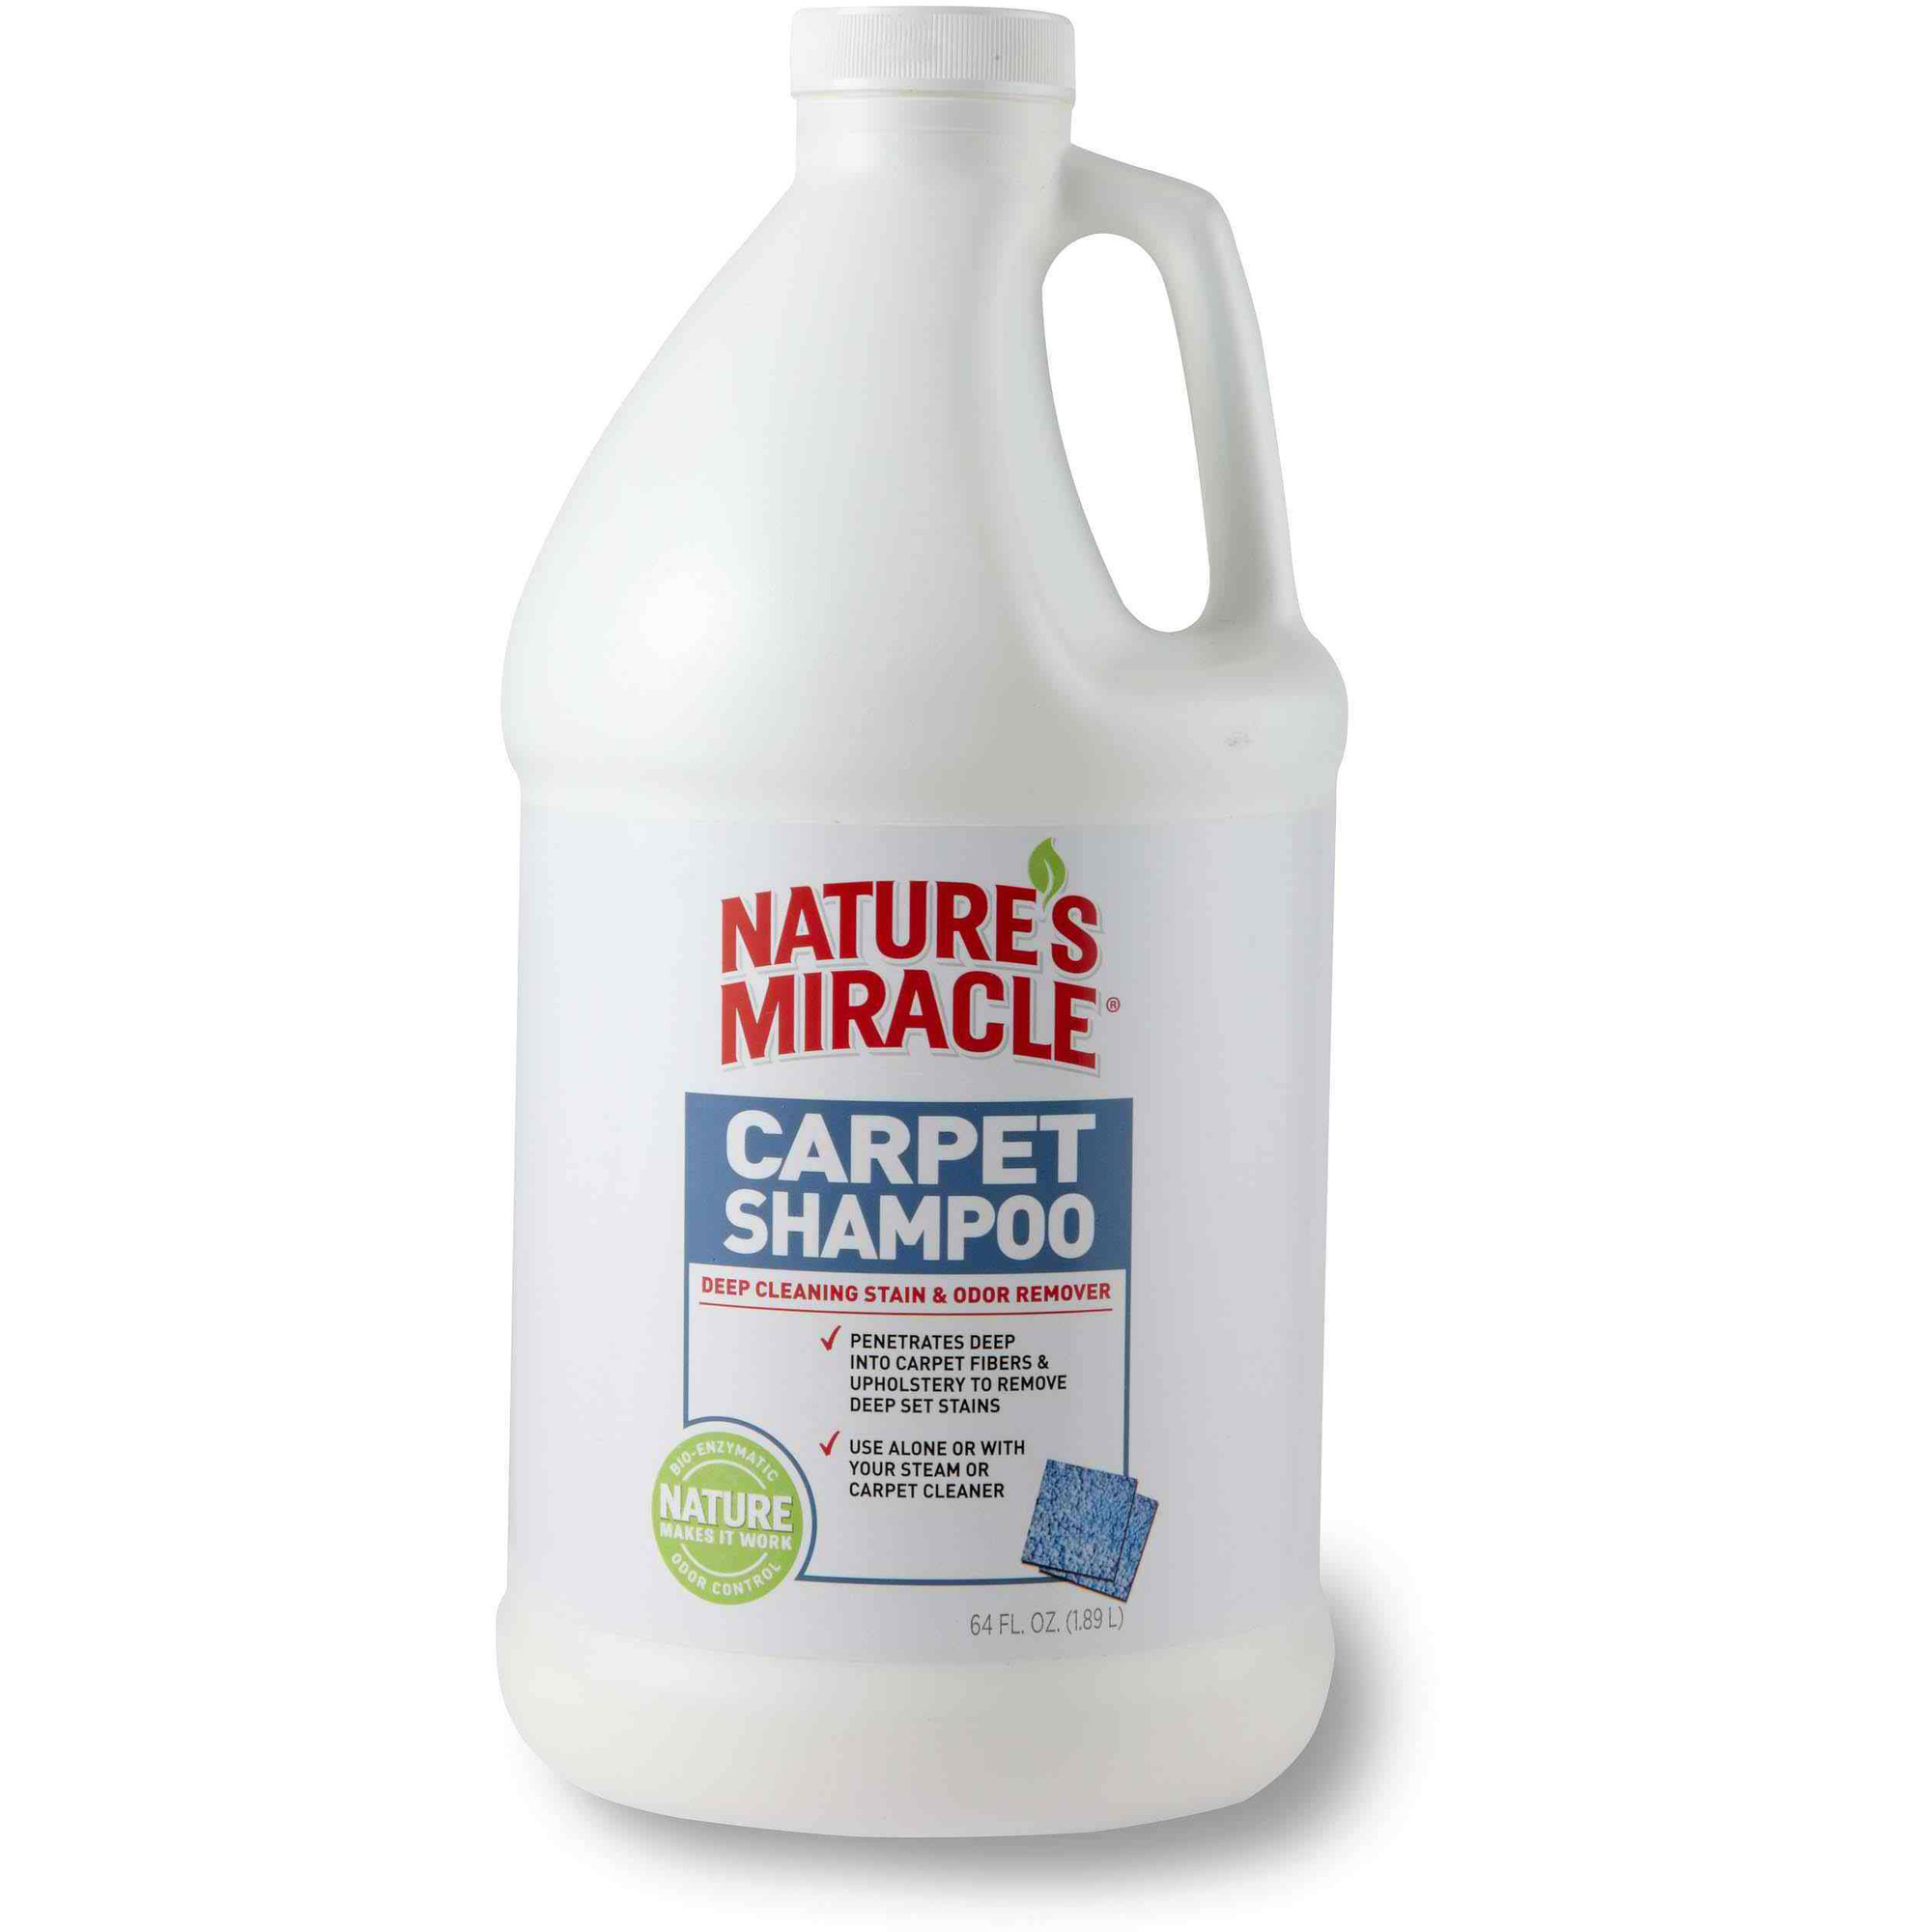 nm средство моющее для ковров и мягкой мебели carpetshampoo с нейтрализаторами аллергенов 1,9 л